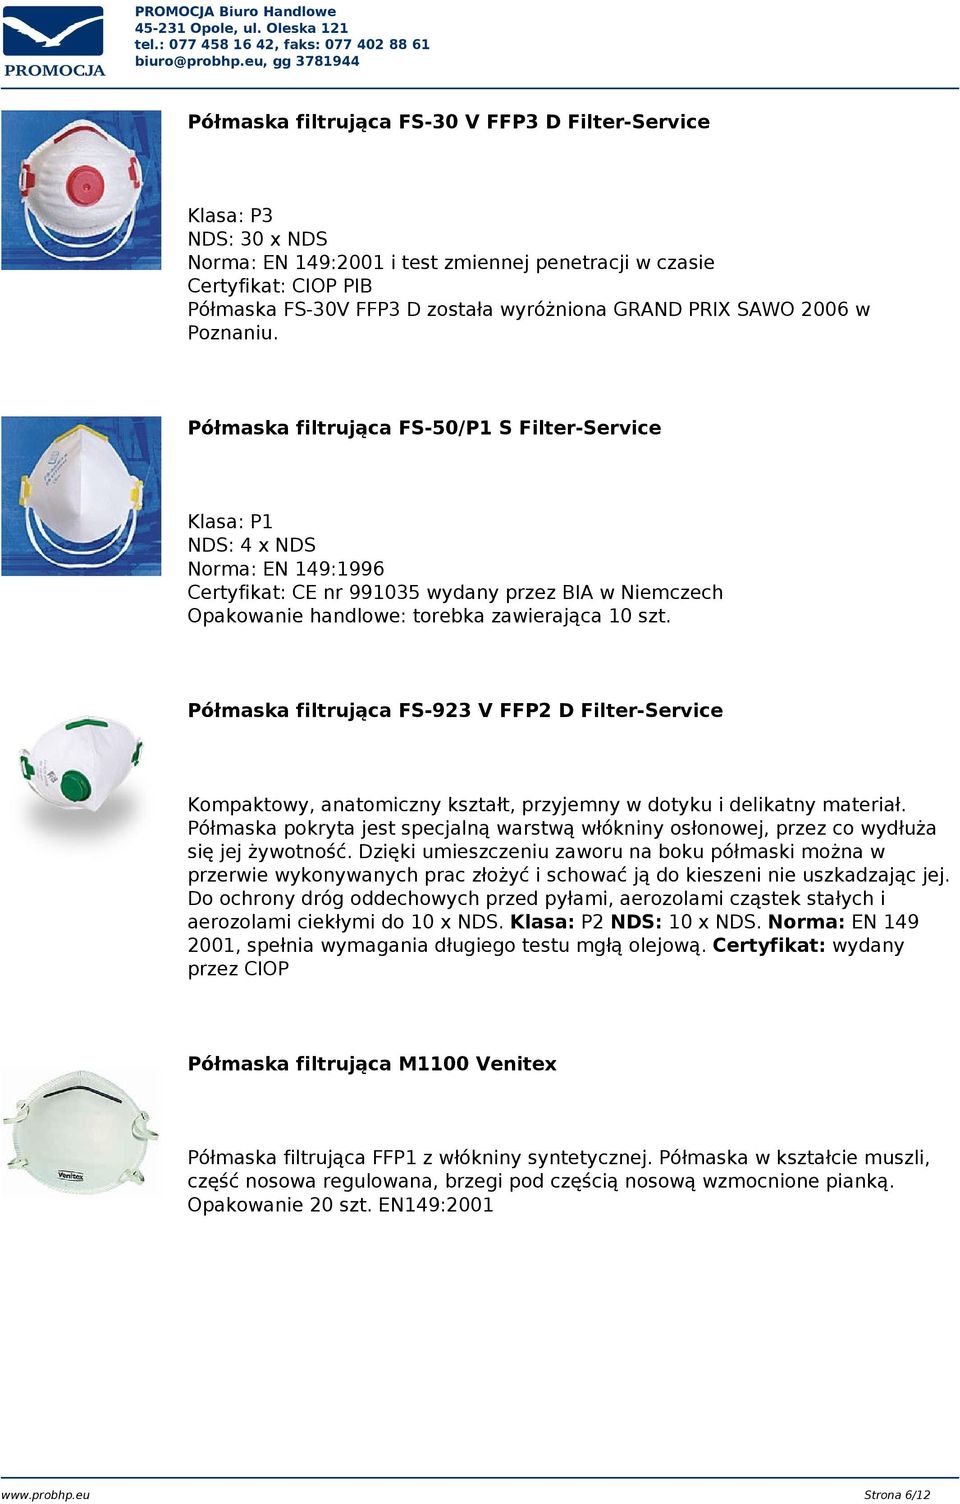 Półmaska filtrująca FS-50/P1 S Filter-Service Klasa: P1 NDS: 4 x NDS Norma: EN 149:1996 Certyfikat: CE nr 991035 wydany przez BIA w Niemczech Opakowanie handlowe: torebka zawierająca 10 szt.